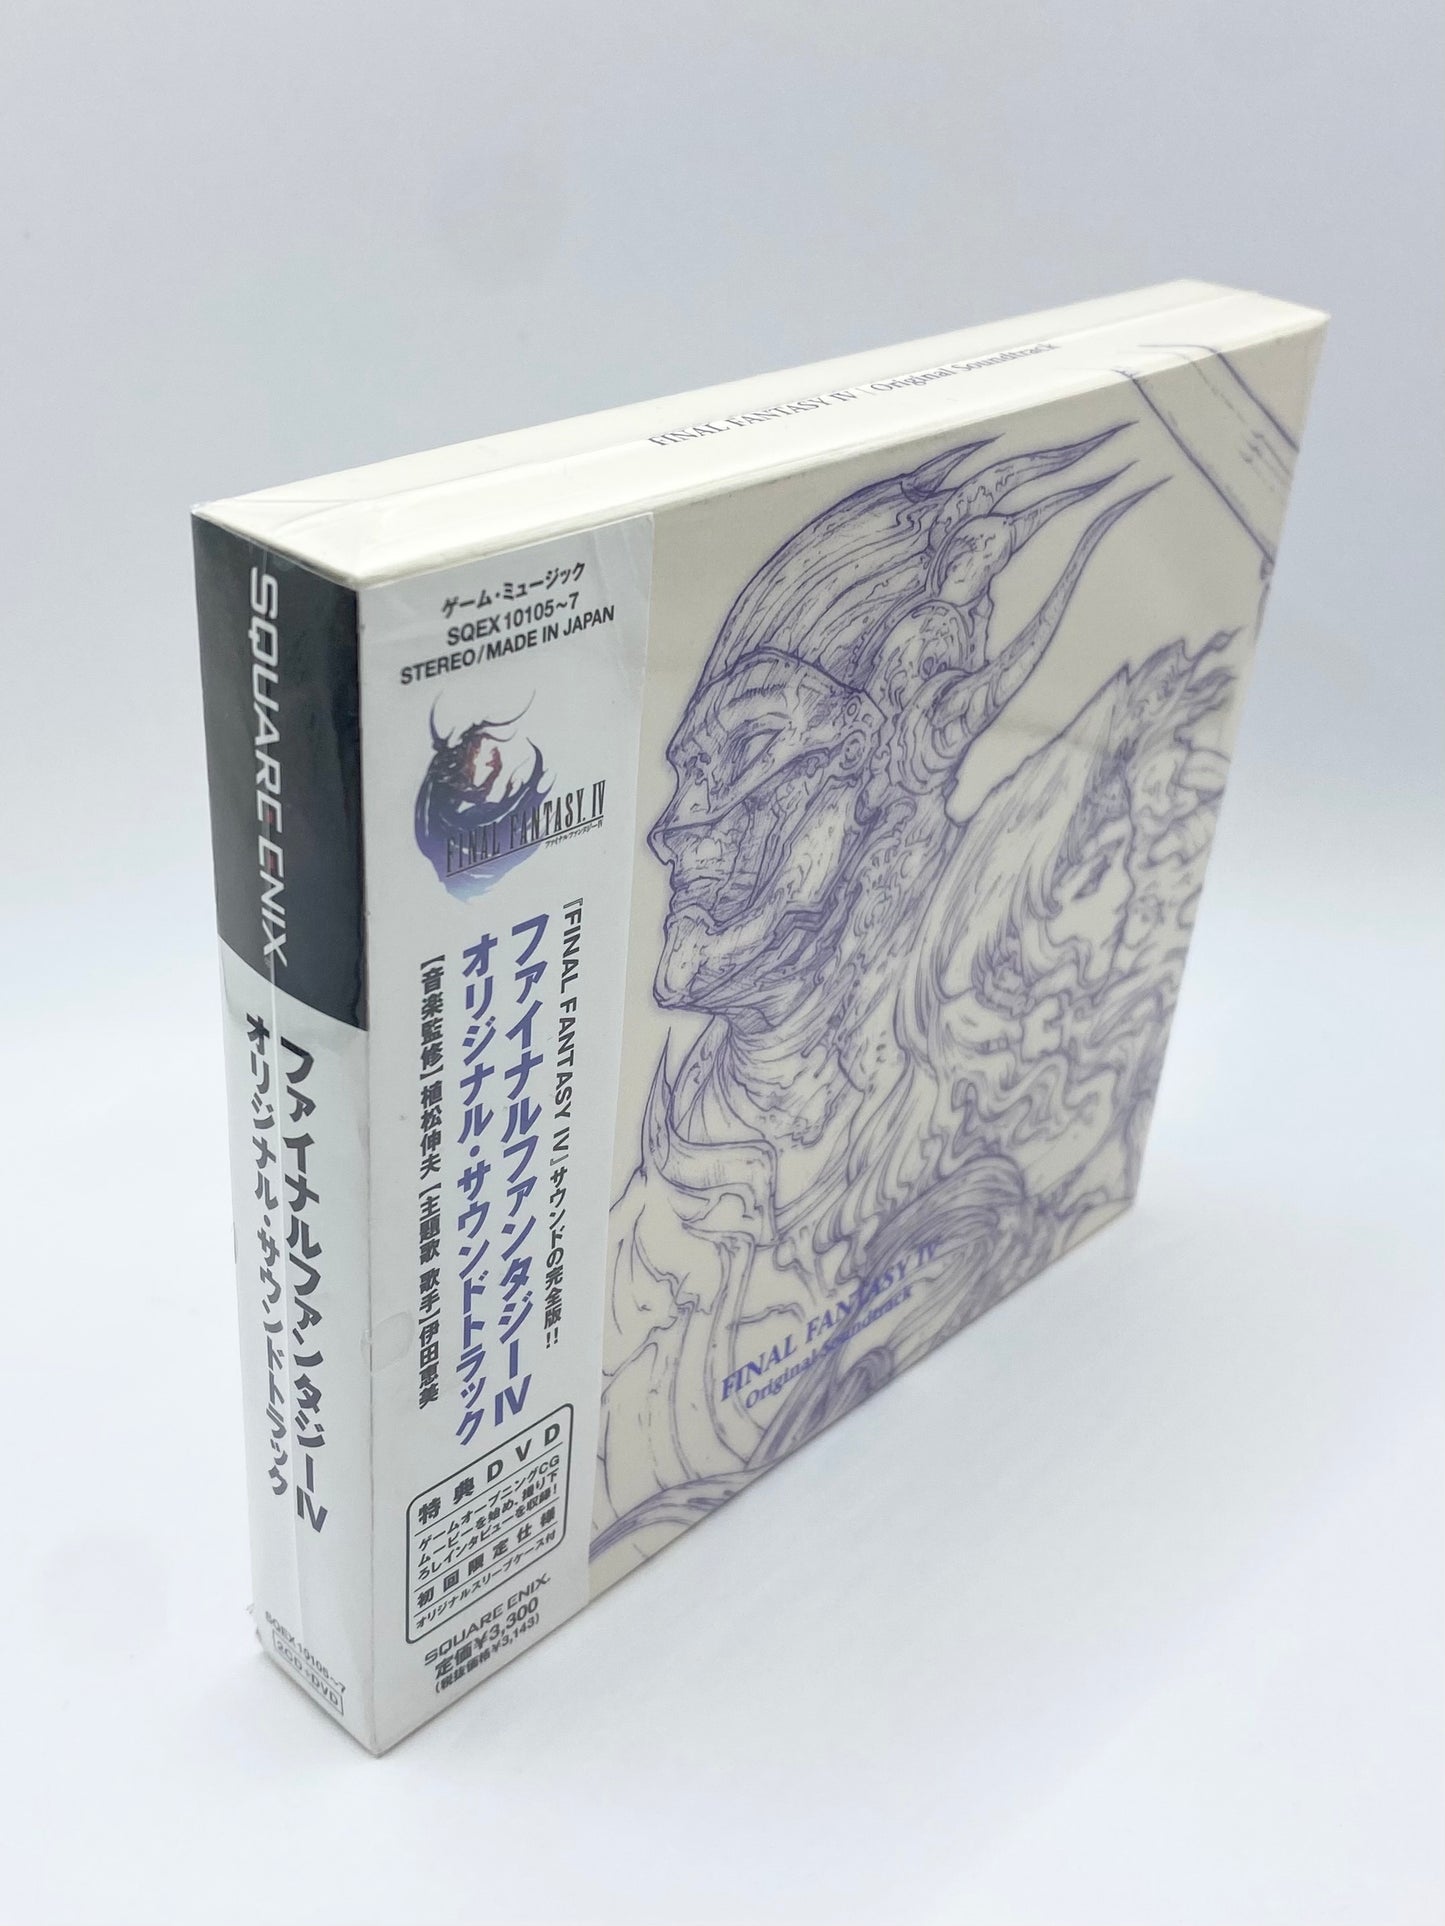 DS Version Final Fantasy IV Original Soundtrack (With DVD) Japan OST